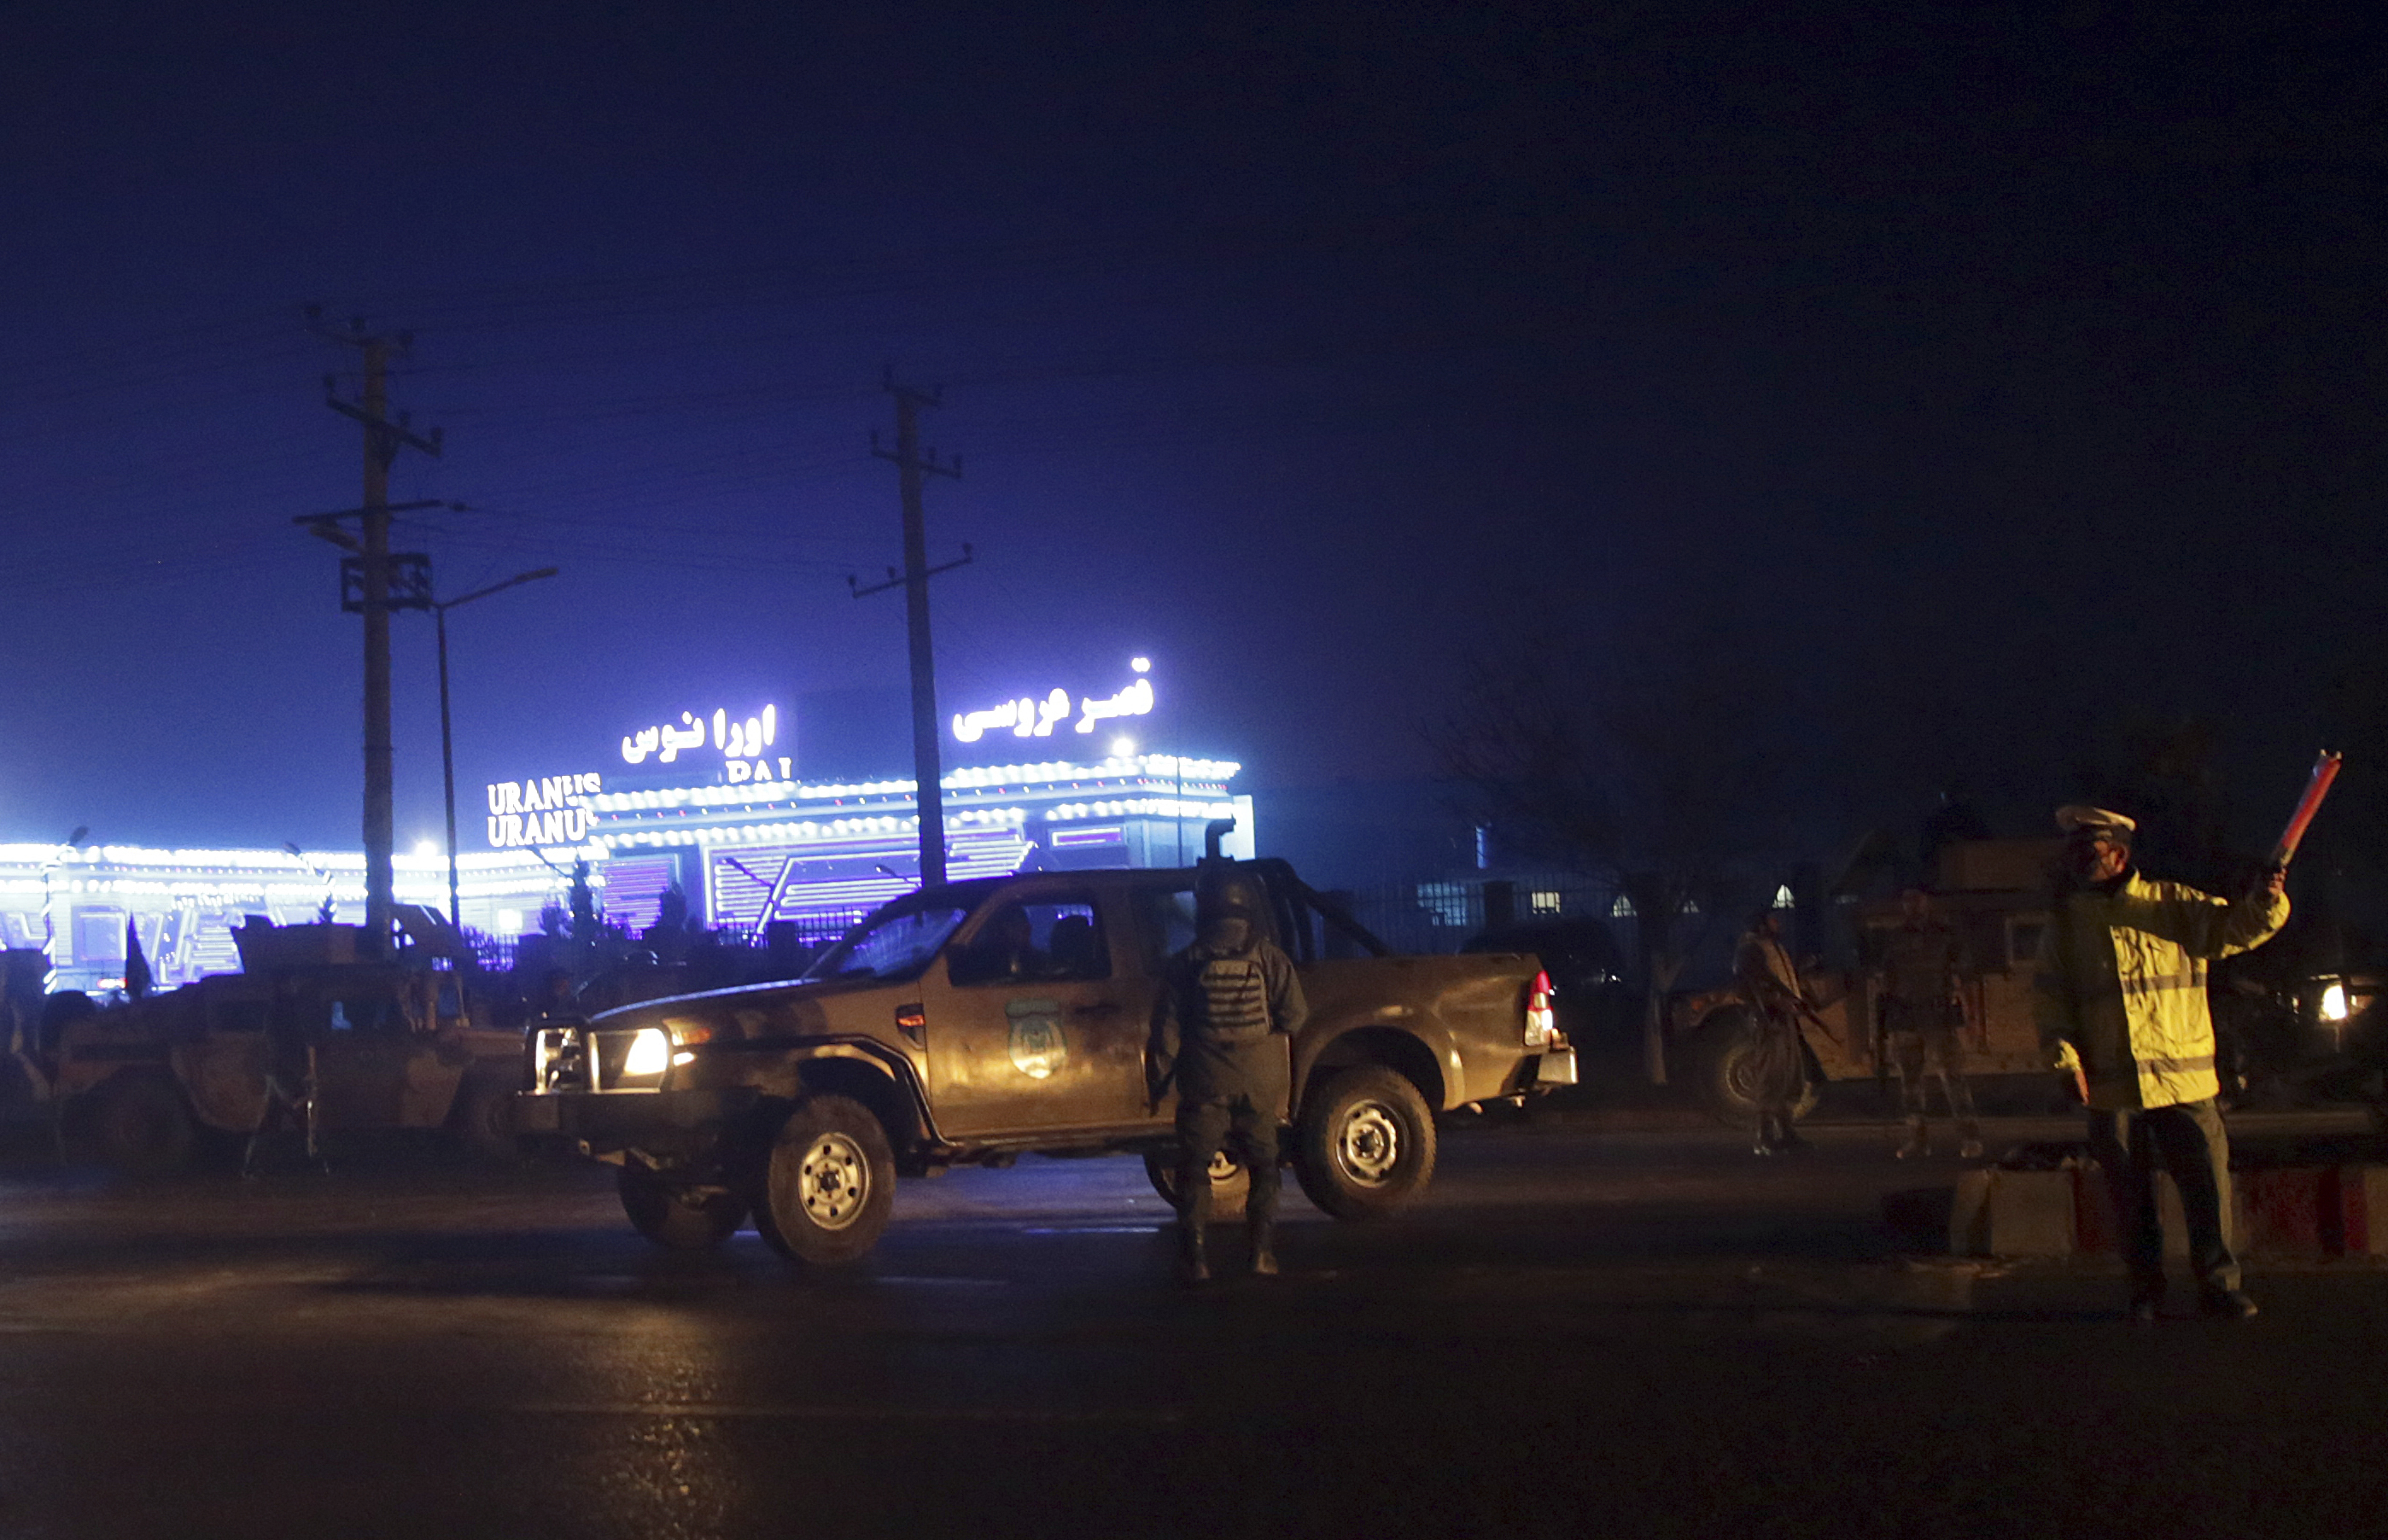 阿富汗首都夜景图片